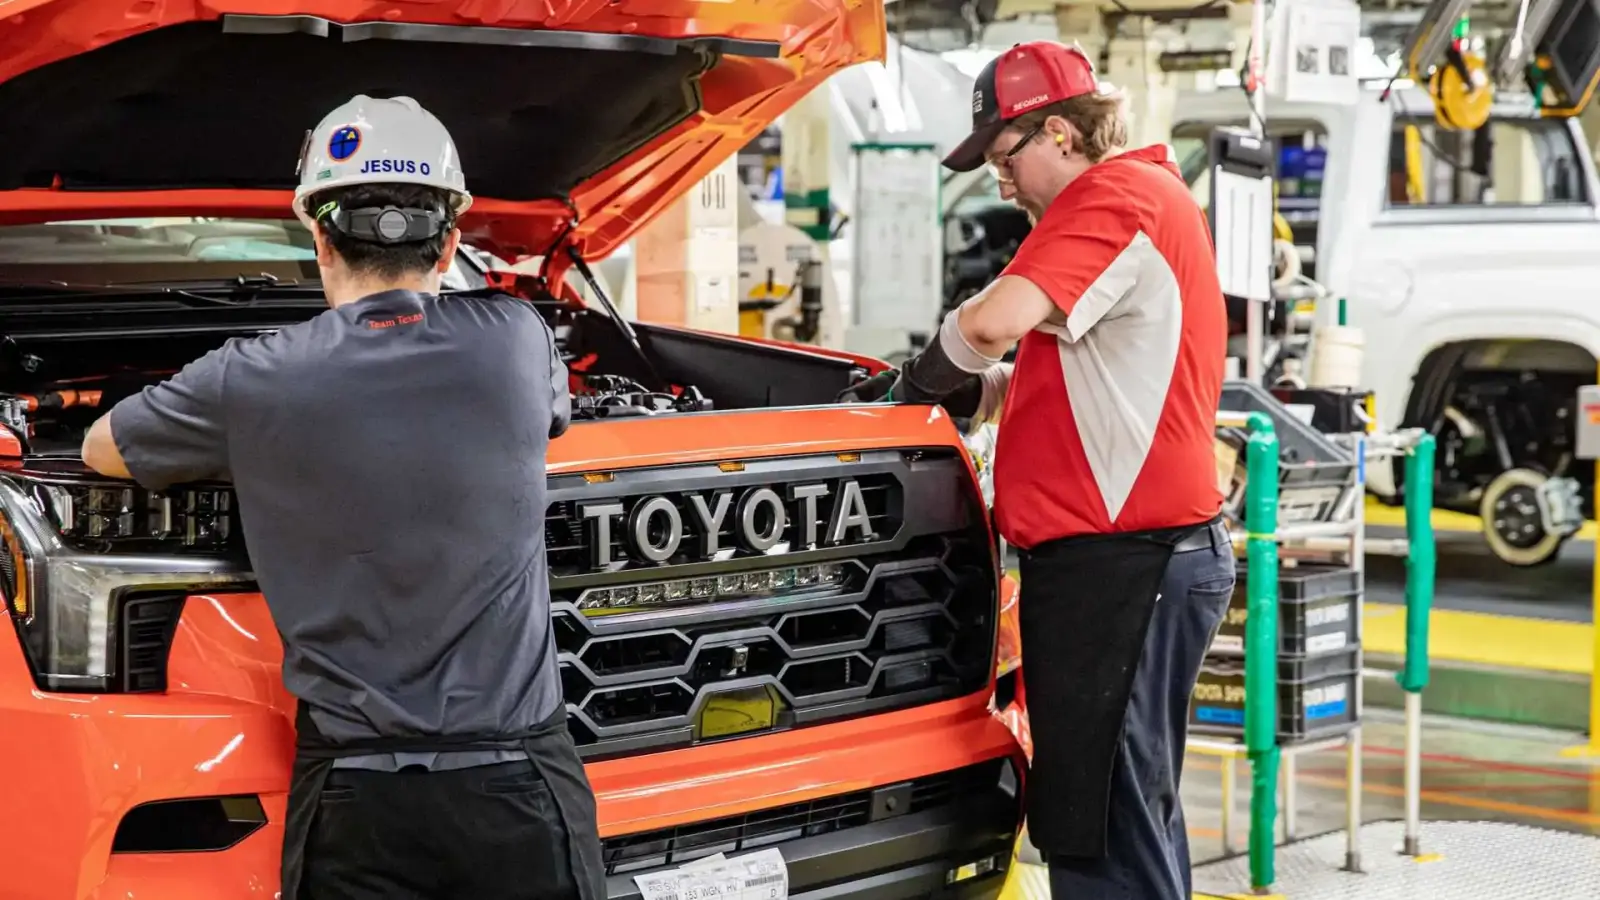 Thiếu phụ tùng, doanh số Toyota toàn cầu sẽ giảm hẳn so với năm 2021